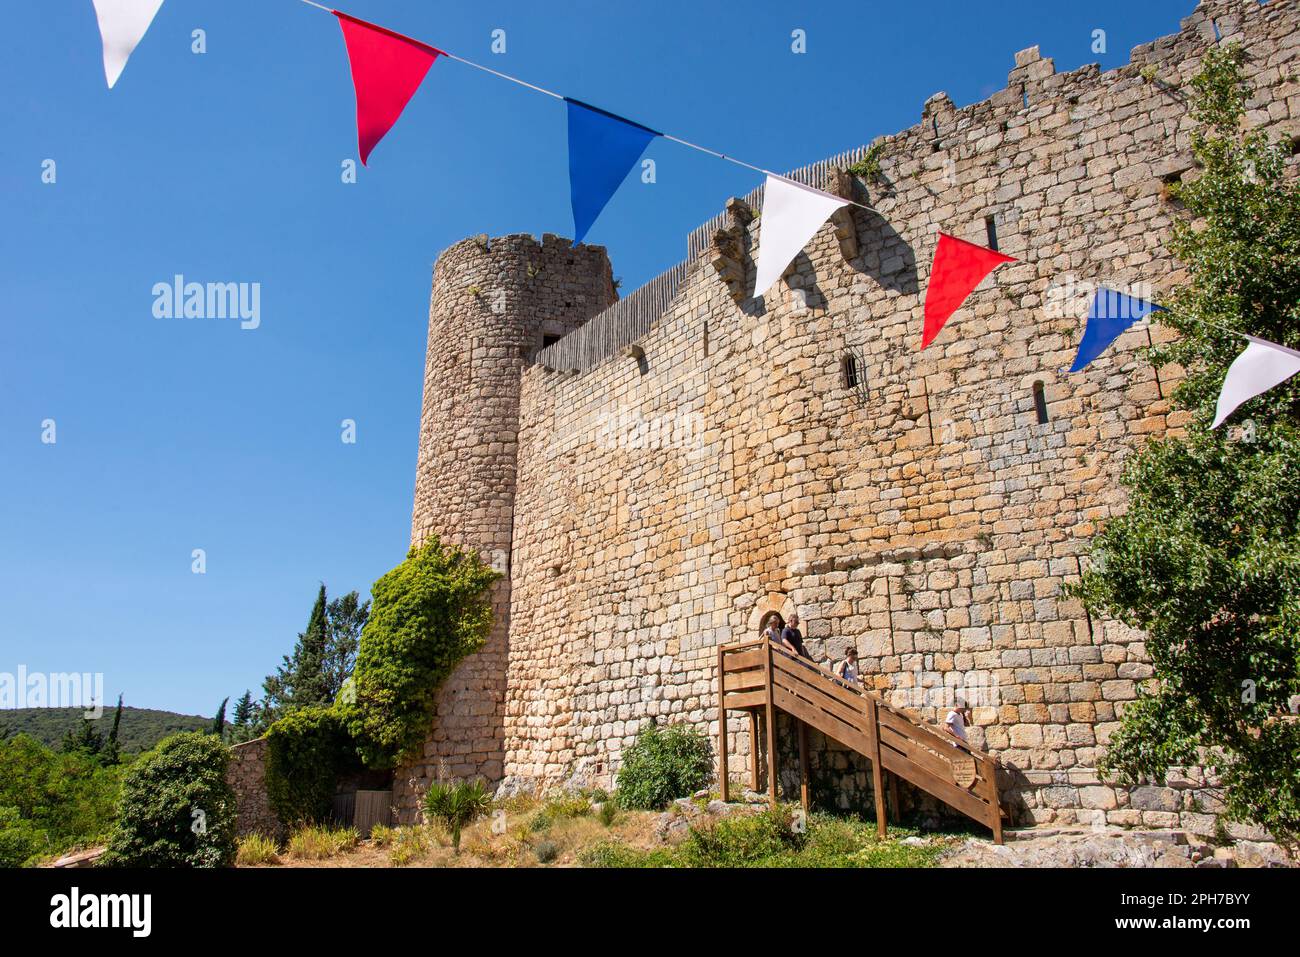 Le château presque carré de Villerouge-Termenès se trouve dans une vallée de la région des Corbières et a autrefois gardé les terres des archevêques de Narbonne. Banque D'Images